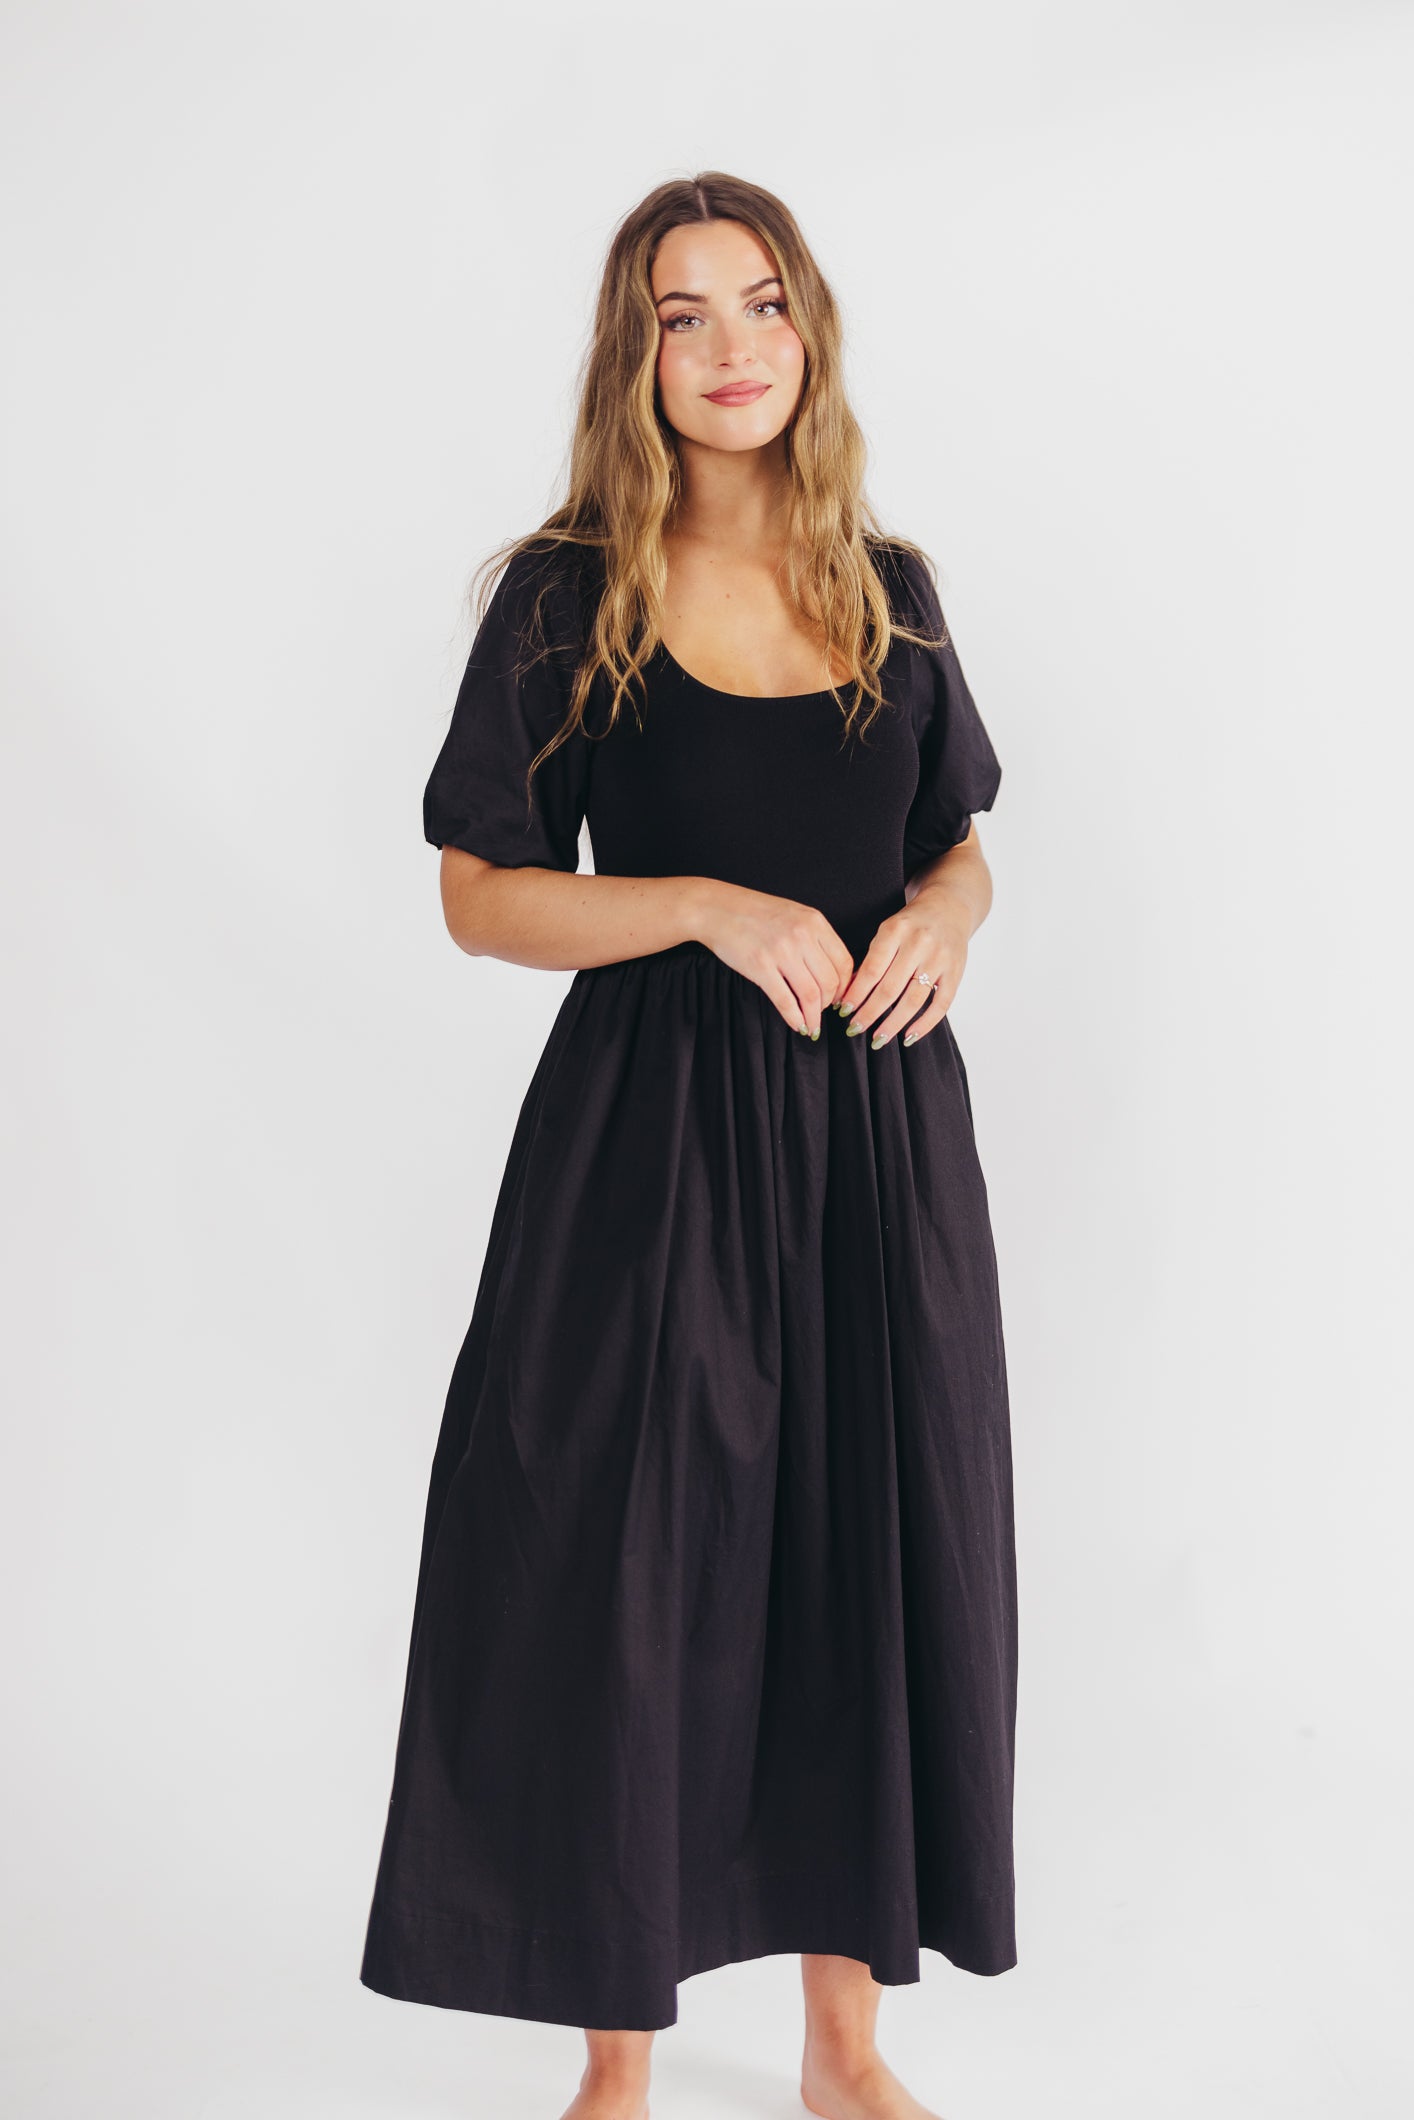 The Premium Alana Midi Dress in Black